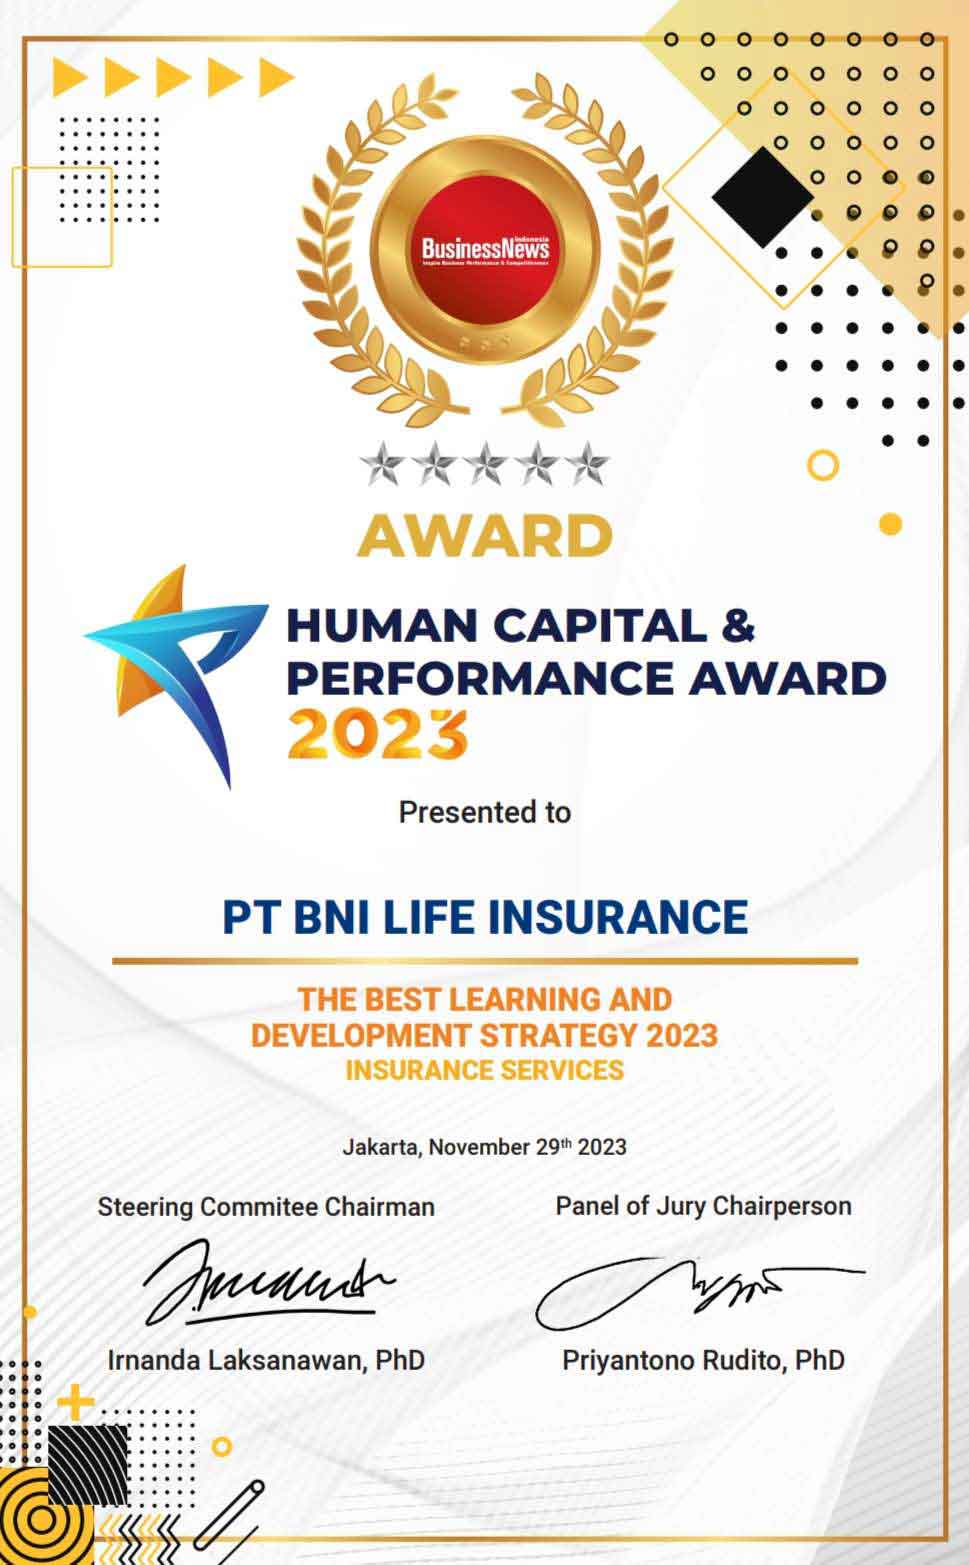 Human Capital & Performance Award 2023